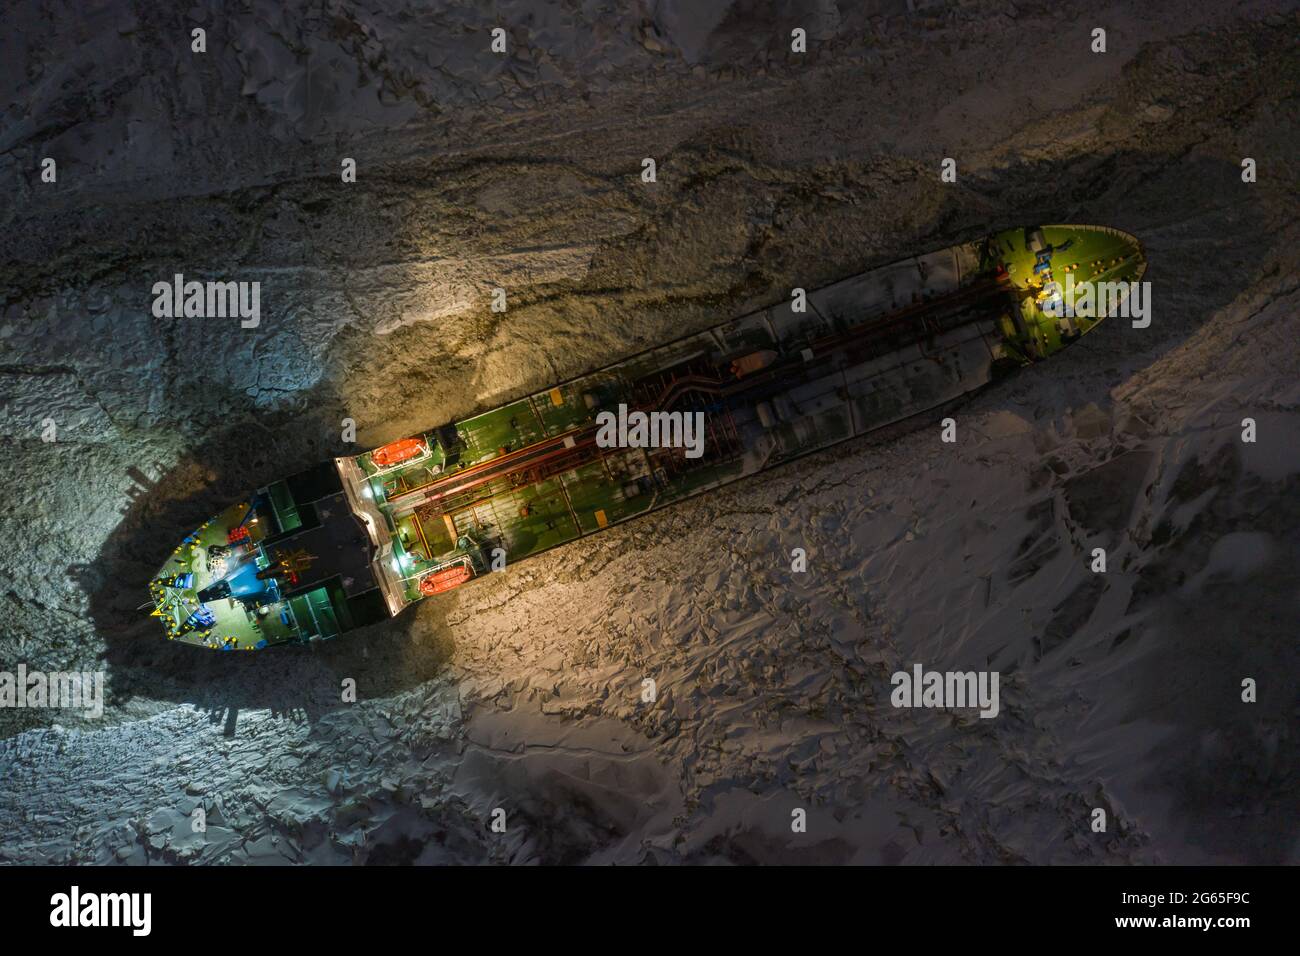 Sabetta, región de Tyumen, Rusia - 04 de diciembre de 2020:El buque tanque está congelado en hielo esperando el rompehielos. La nave brilla con todas las luces de noche Foto de stock